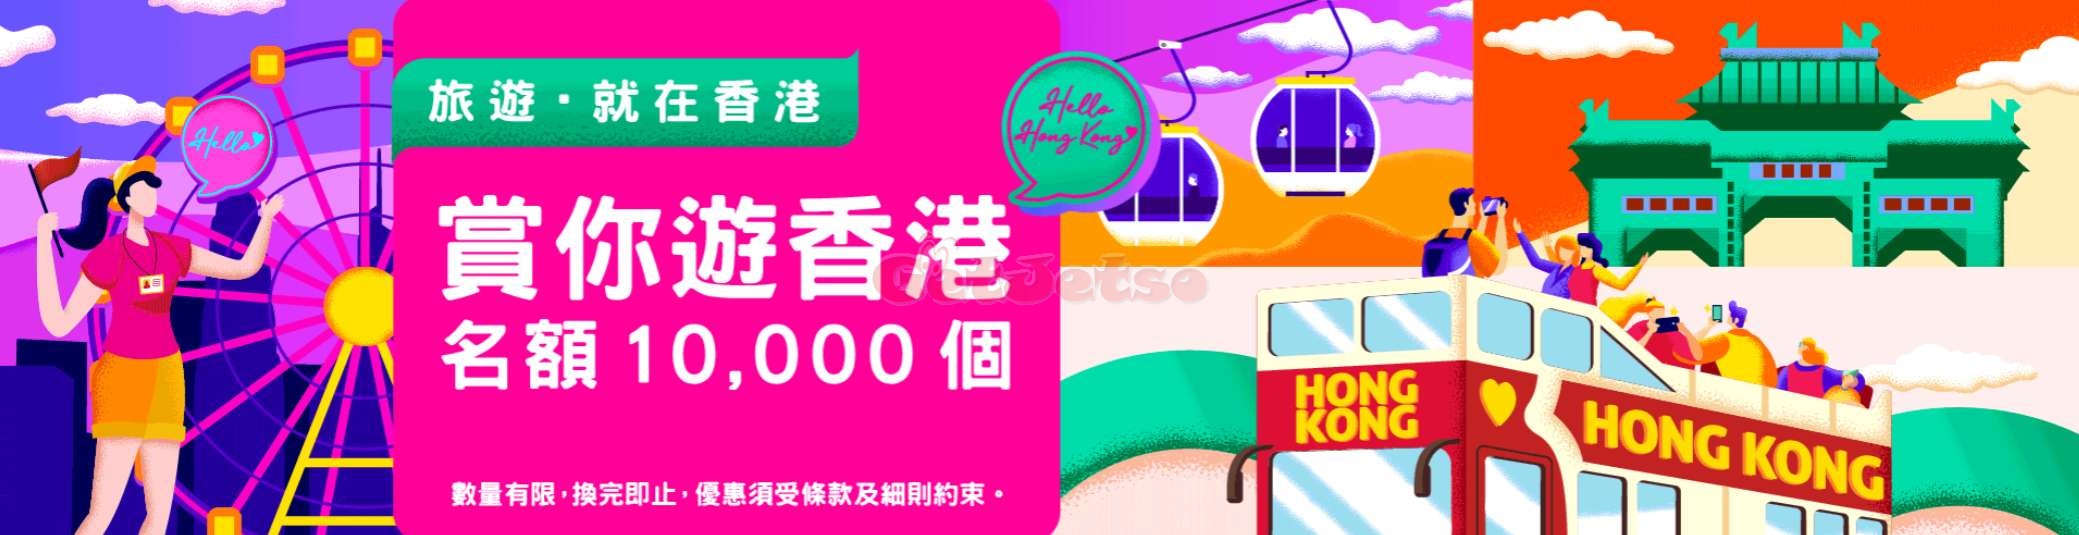 消費滿0免費參加本地旅行團「賞你遊香港」名額1萬個@旅發局(至20年12月31日)圖片3